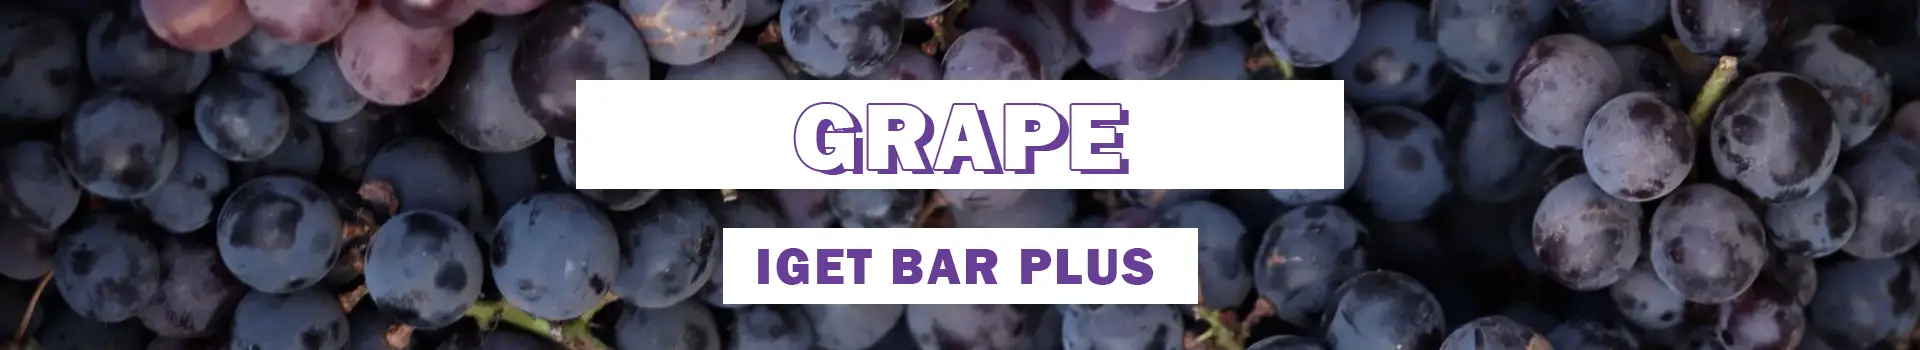 grape iget bar plus flavours